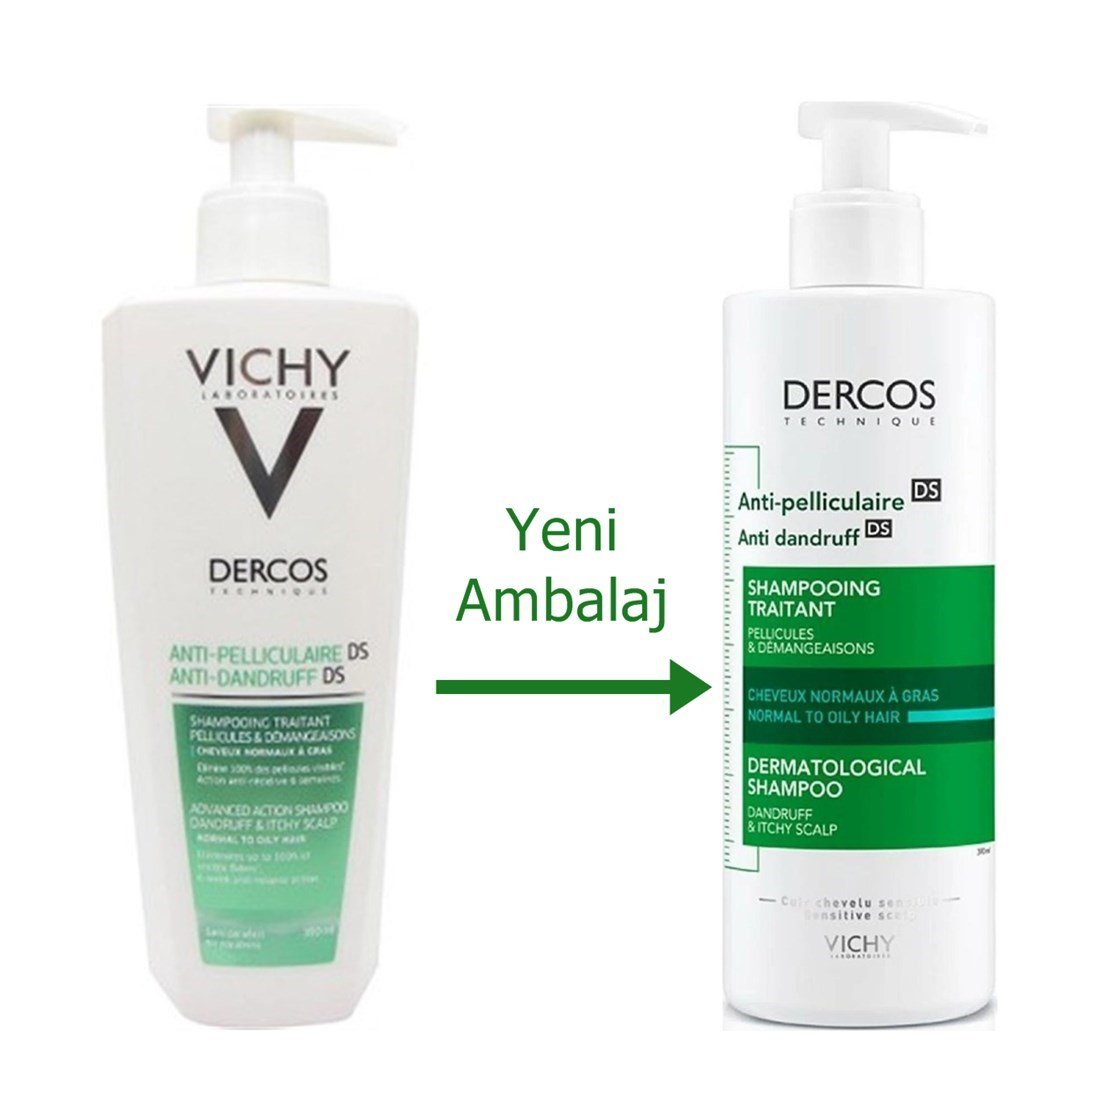 Vichy Dercos Kepeğe Karşı Etkili Bakım Şampuanı (Normal/Yağlı Saçlar İçin)  390 ml | Dermoailem